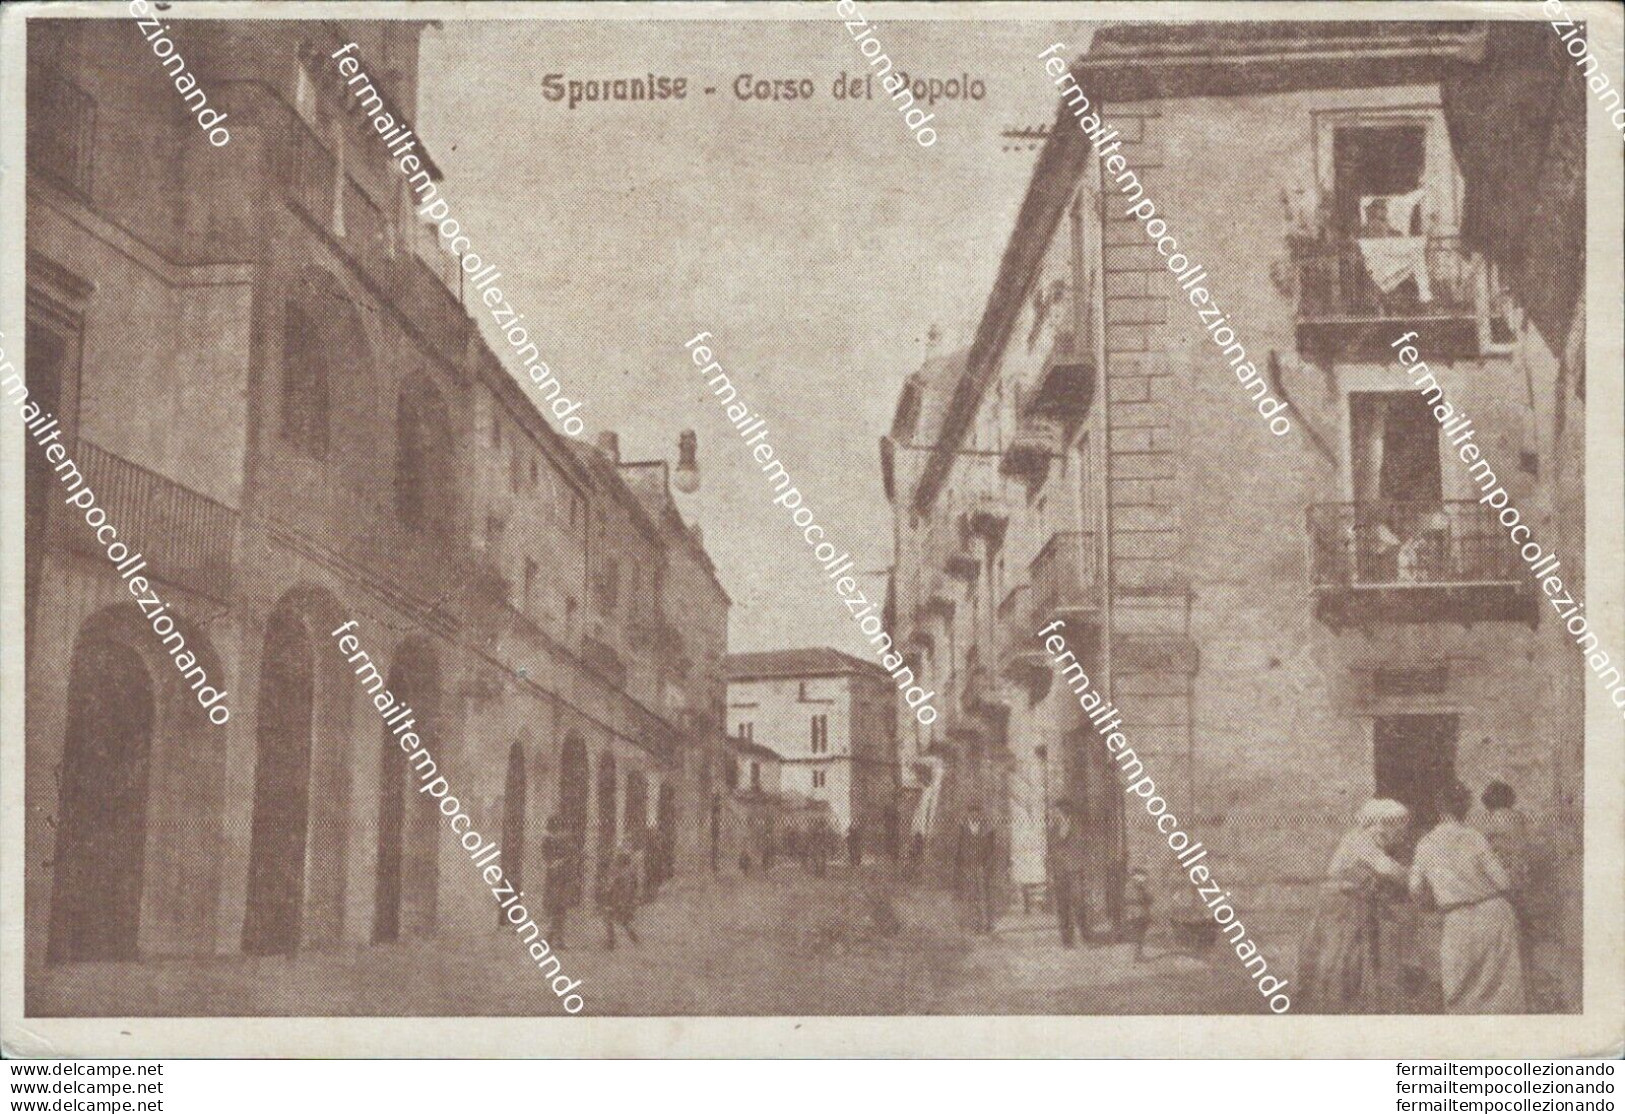 Bq618 Cartolina Sparanise Corso Del Popolo Bella! Provincia Di Caserta Campania - Caserta